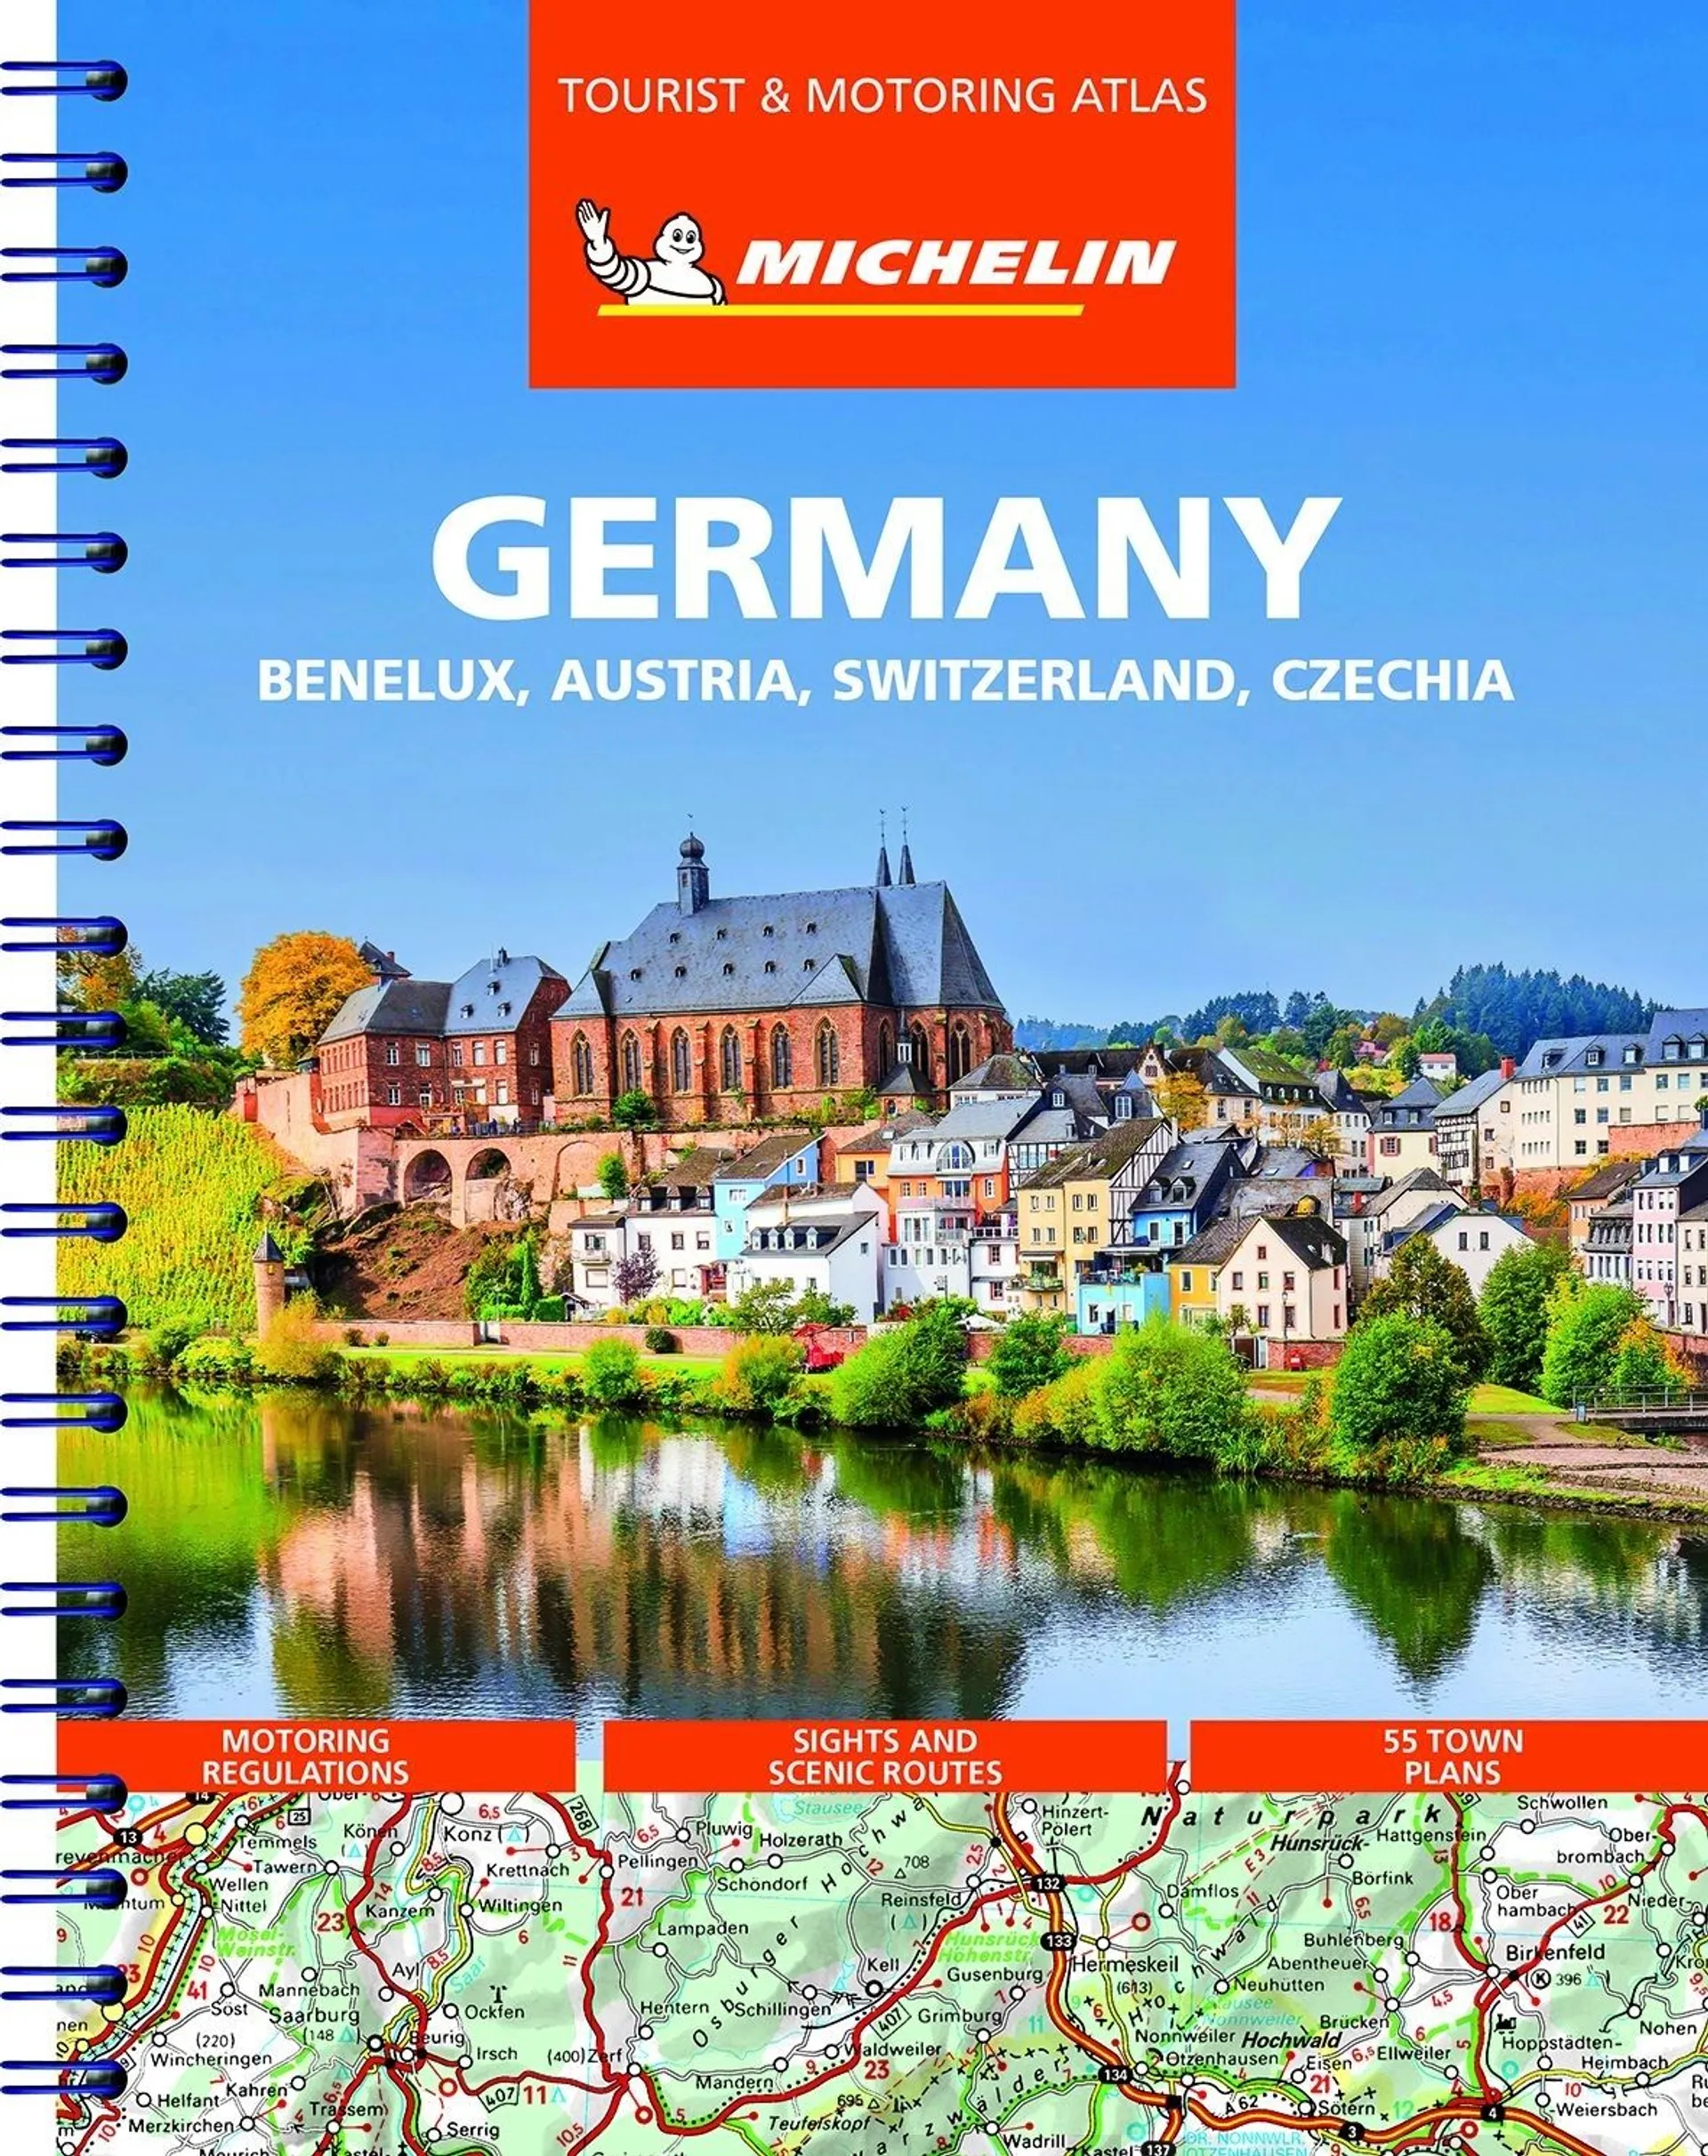 Germany, Benelux, Austria, Switzerland, Czech Republic - Tourist and Motoring Atlas / Saksa-Benelux-Itävalta-Sveitsi-Tšekki tiekartasto